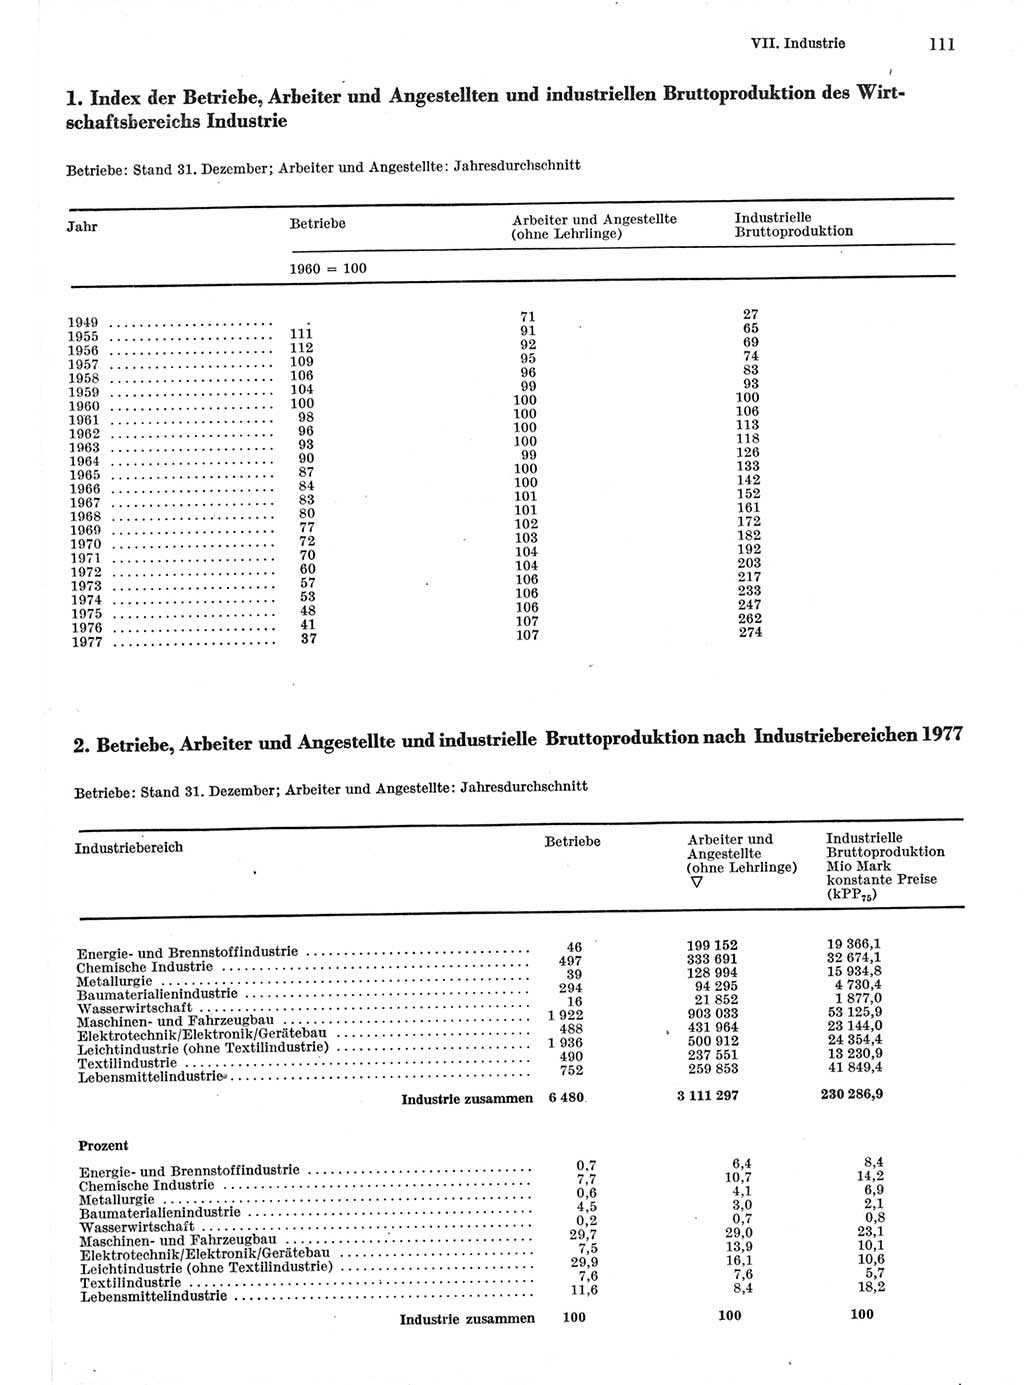 Statistisches Jahrbuch der Deutschen Demokratischen Republik (DDR) 1978, Seite 111 (Stat. Jb. DDR 1978, S. 111)